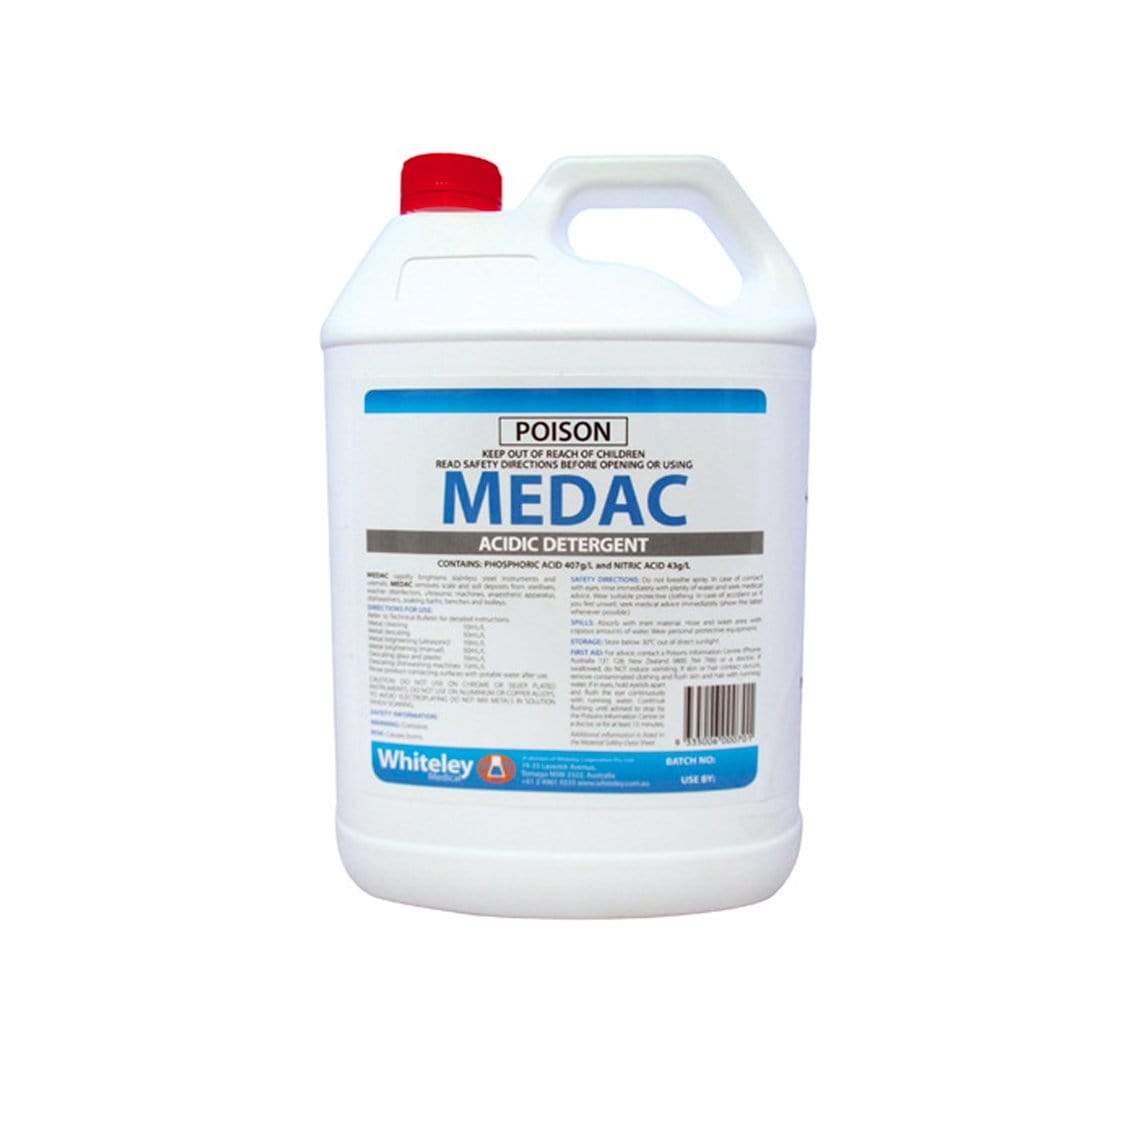 Medac Acidic Detergent